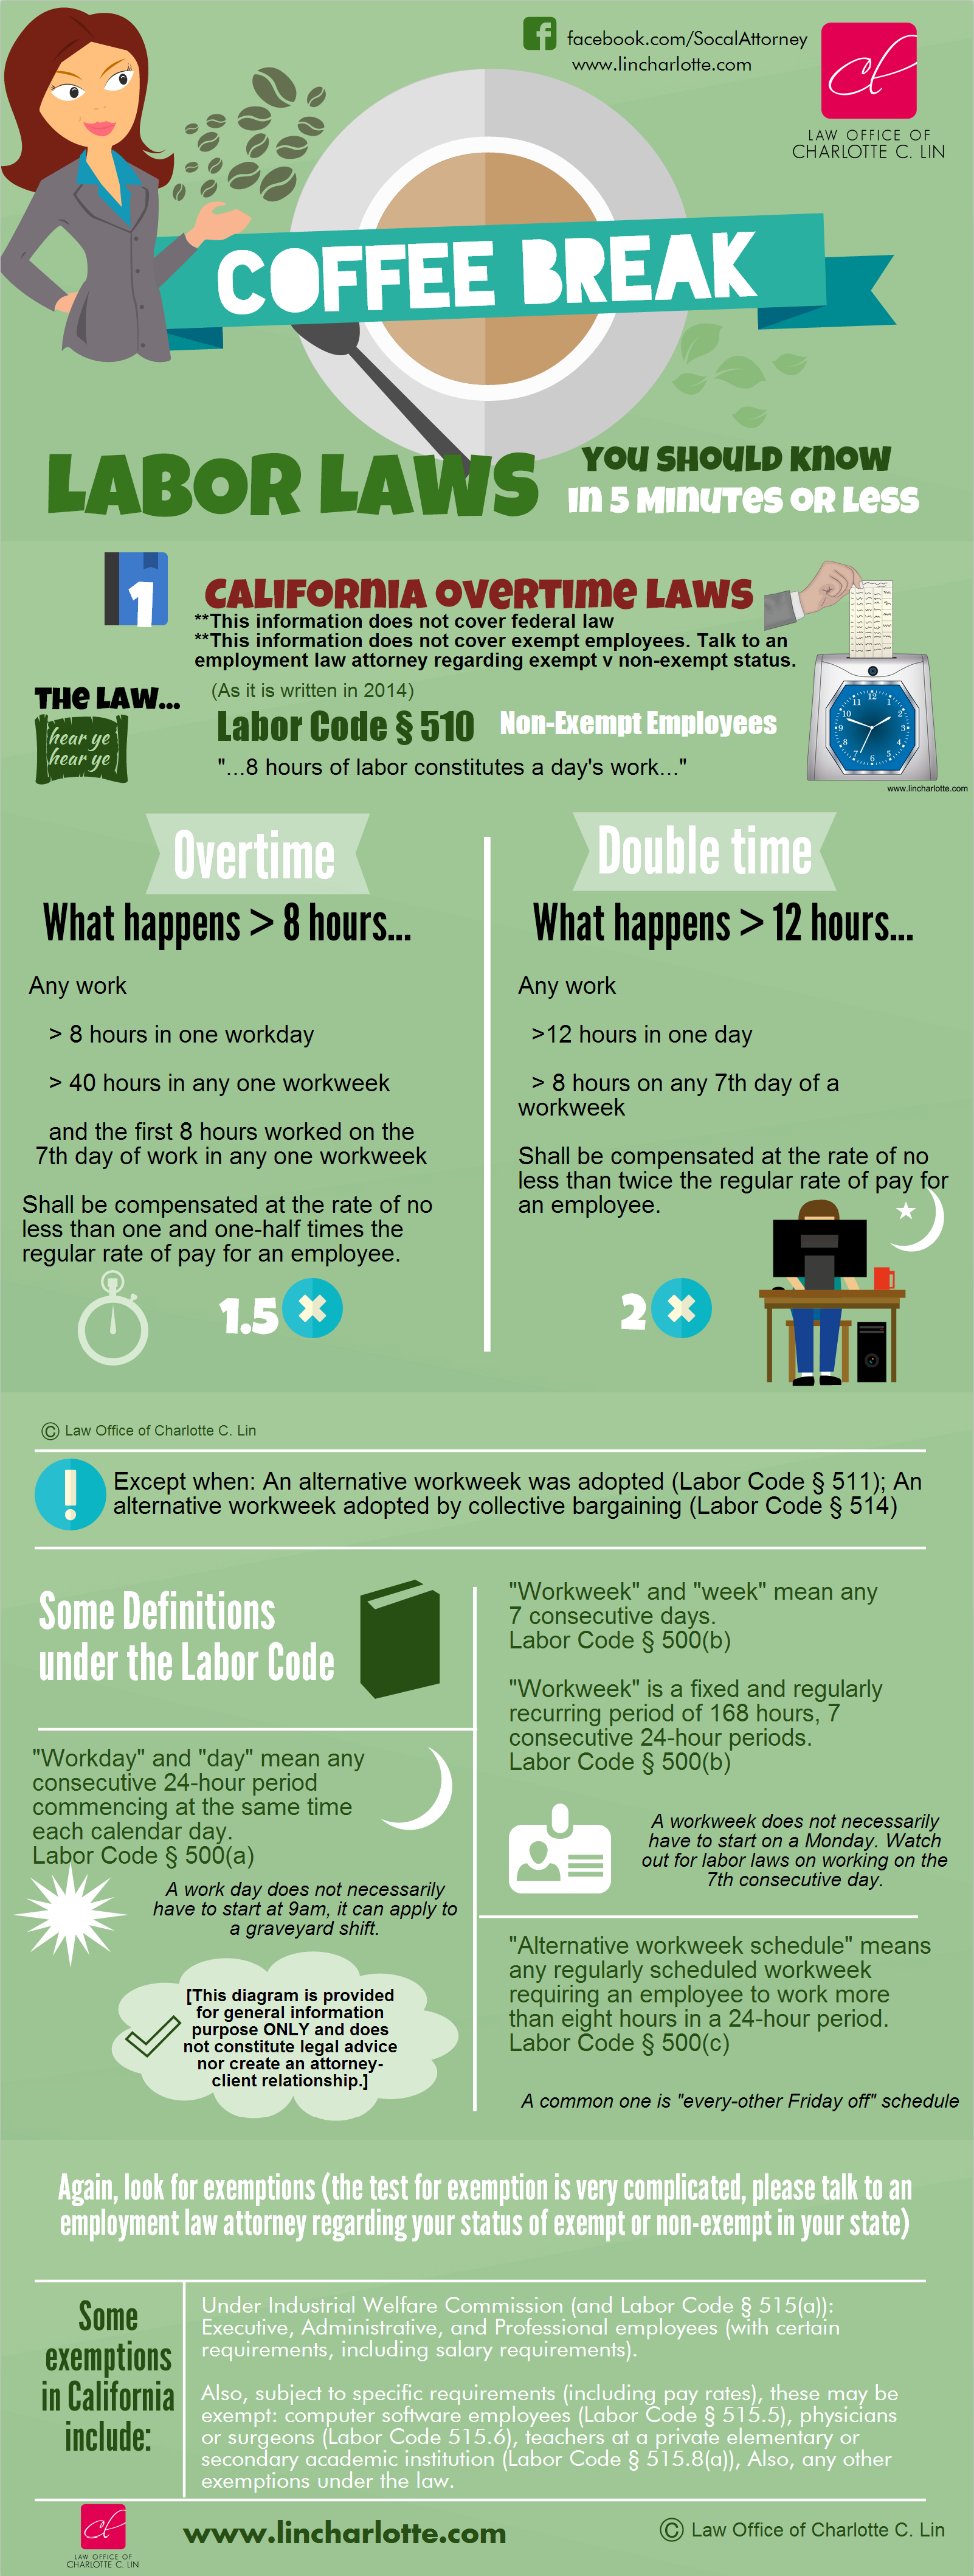 New Labor Laws in California